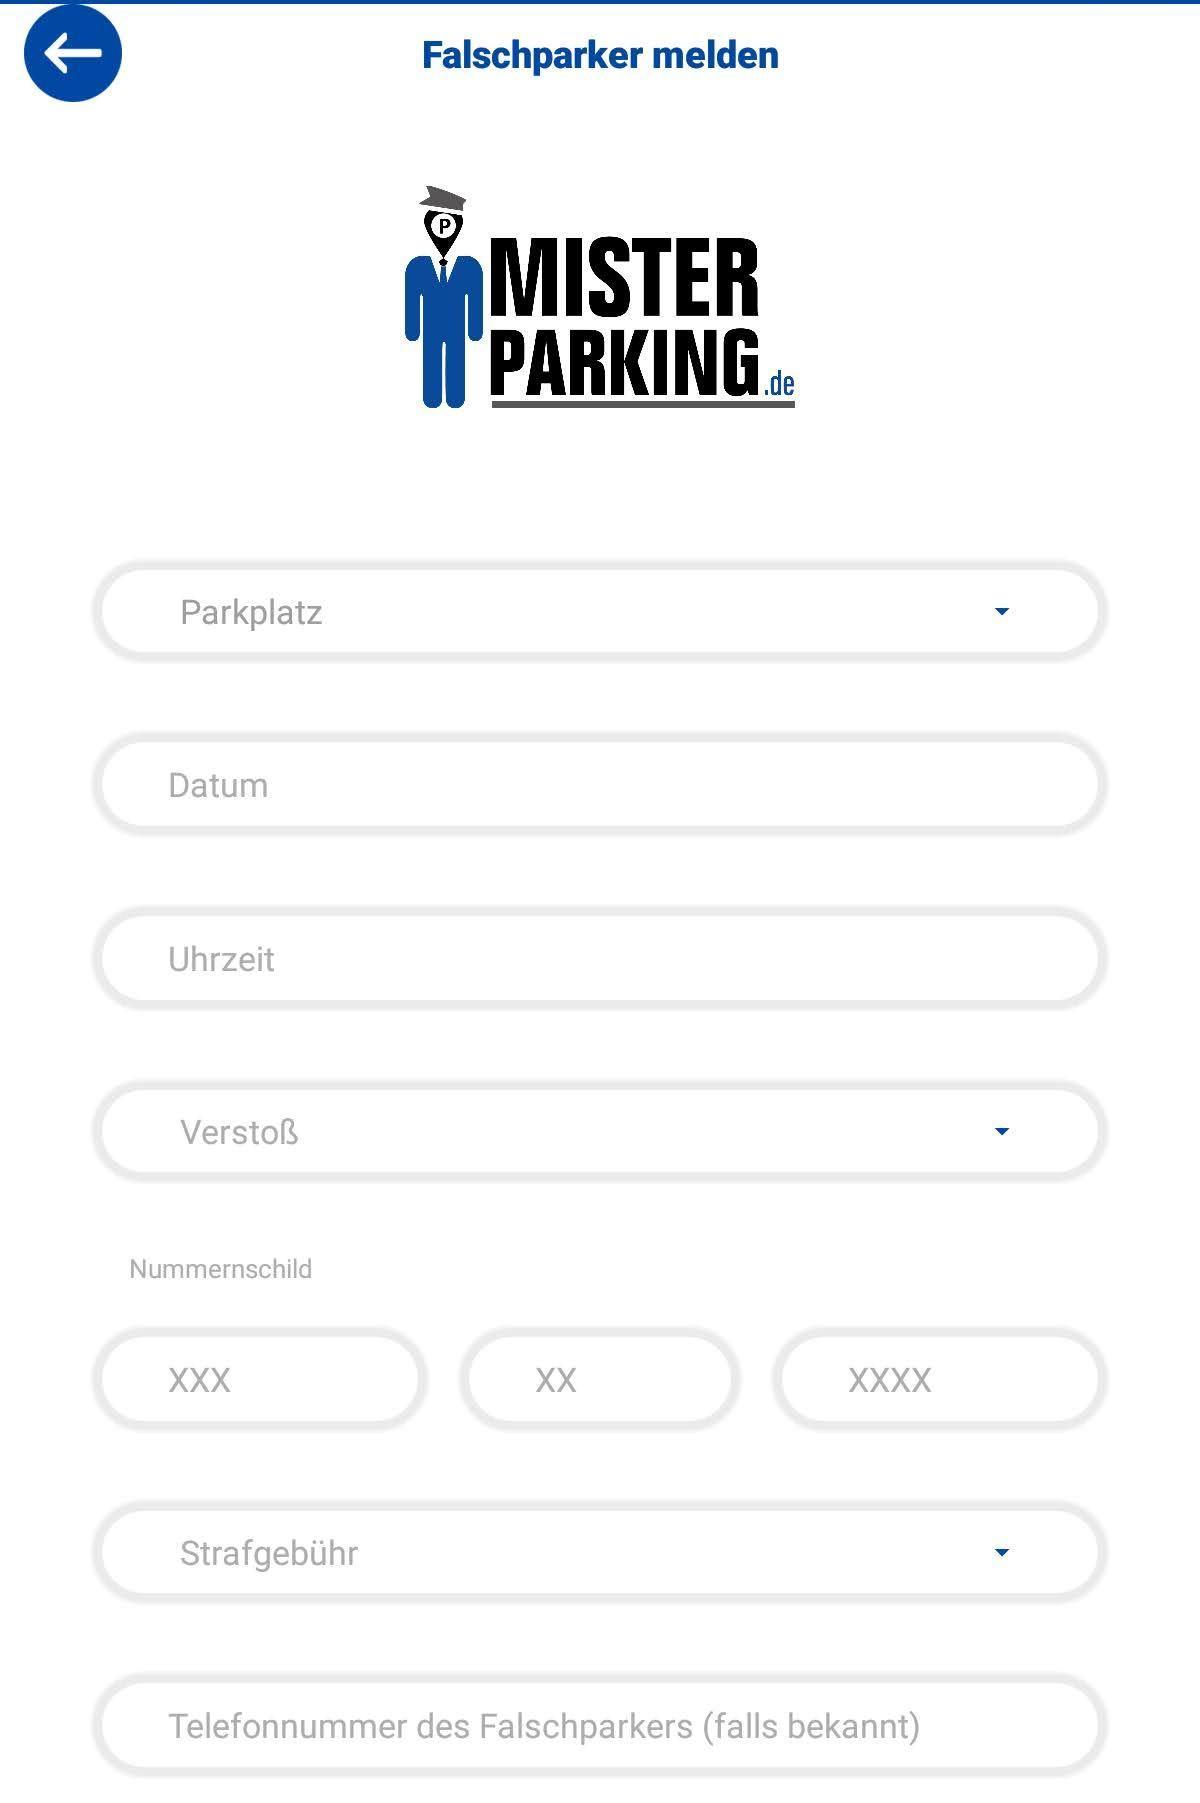 Mr parking